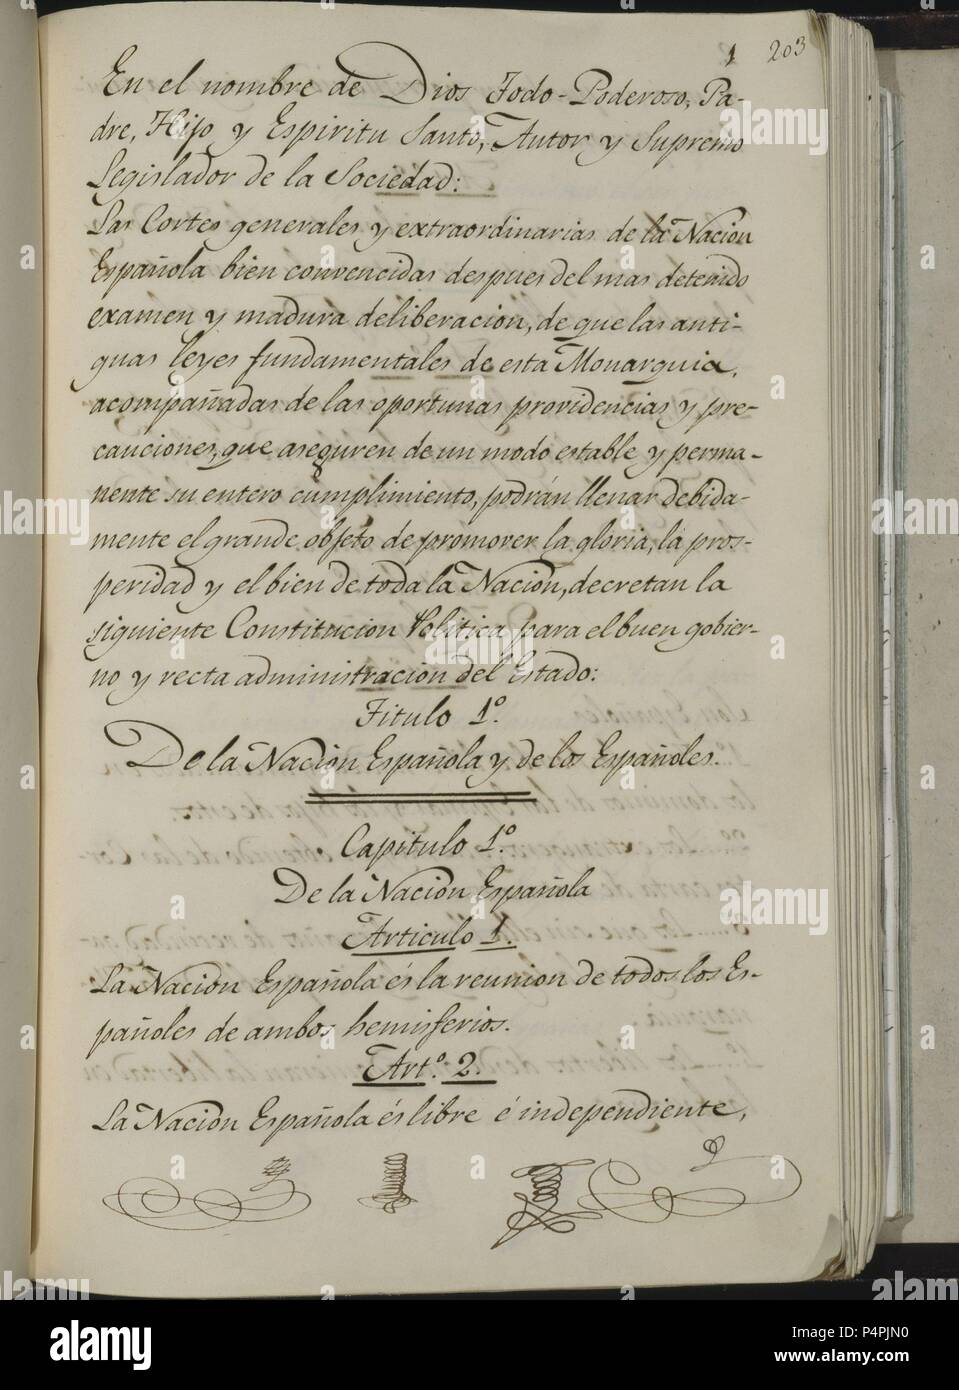 CONSTITUCION POLITICA DE LA MONARQUIA ESPAÑOLA 1812 - PAGINA 1. Location: CONGRESO DE LOS DIPUTADOS-BIBLIOTECA, MADRID, SPAIN. Stock Photo